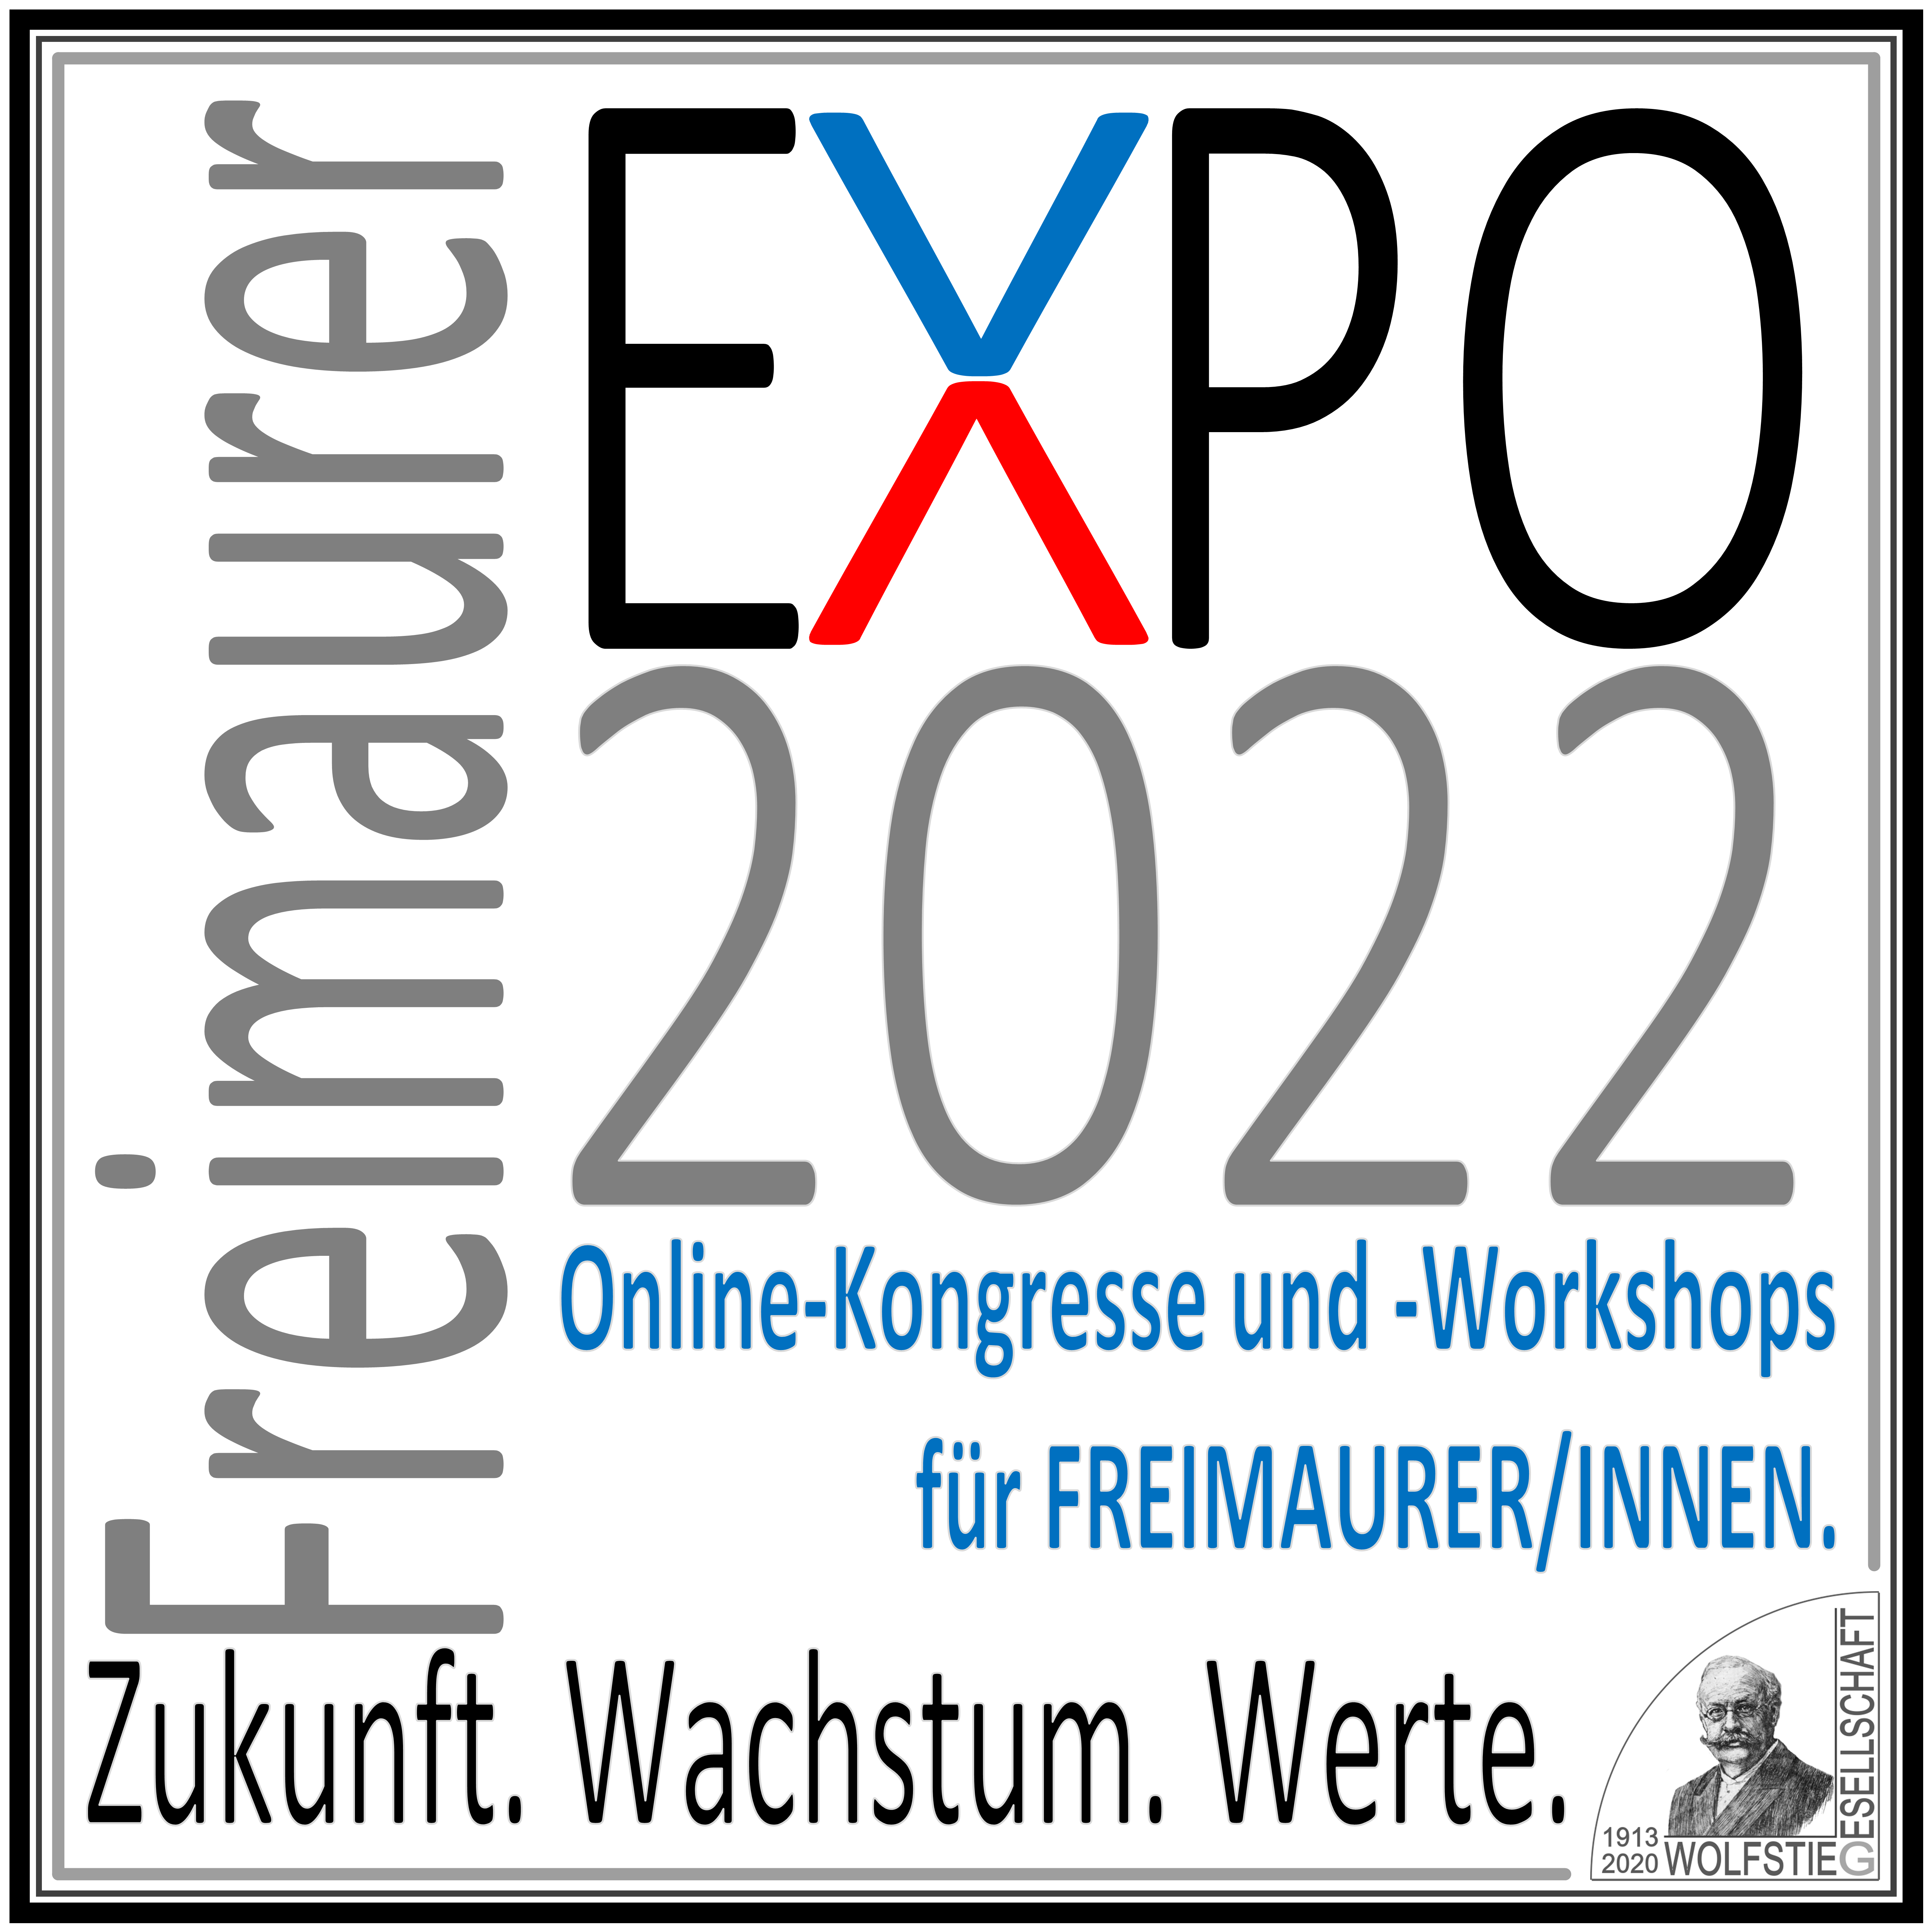 Freimaurer EXPO 2022 | Zukunft.Wachstum.Werte Online-Kongresse und -Workshops für Freimaurer/innen.